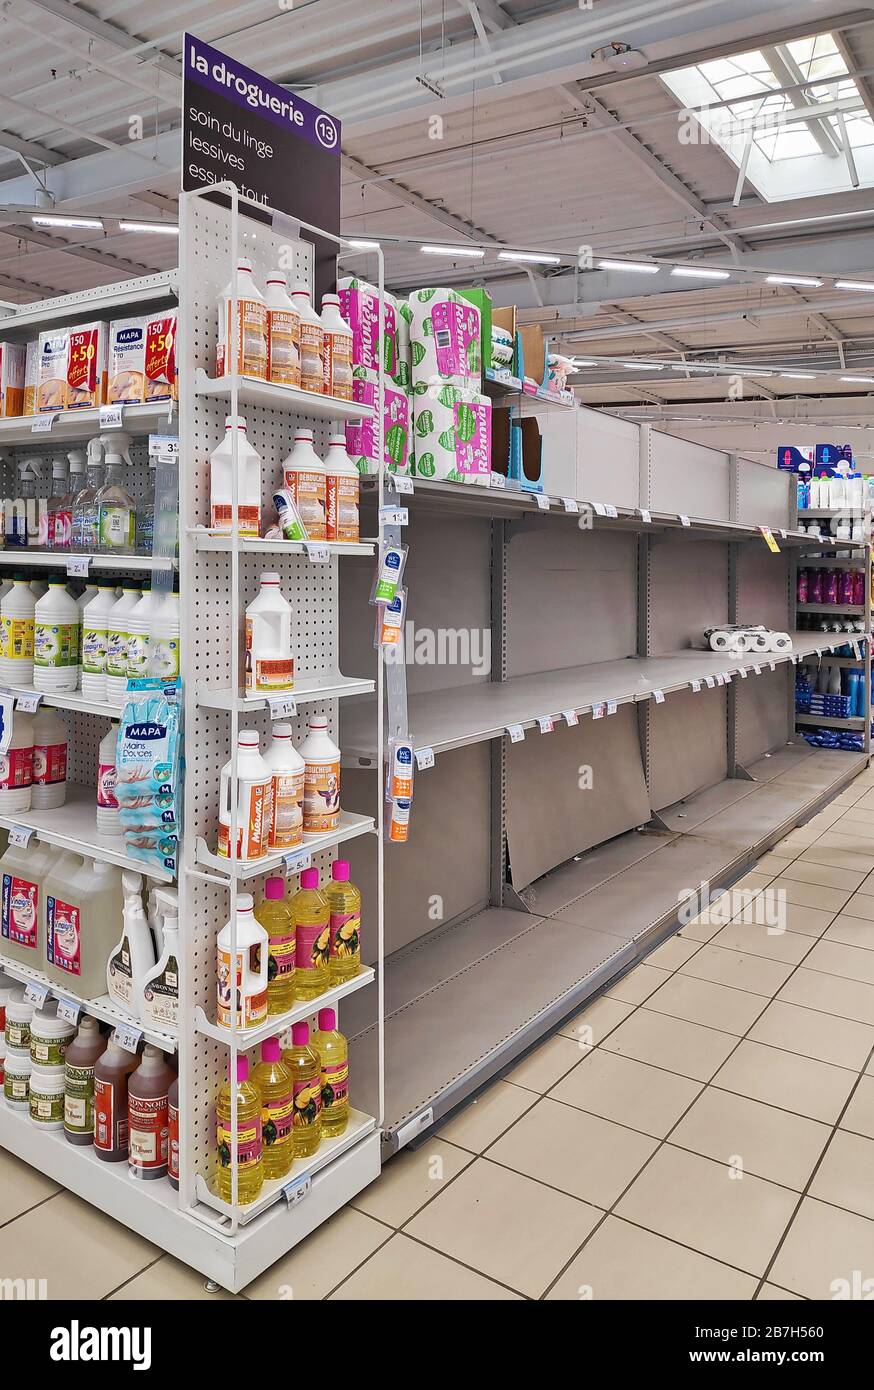 Paris, Frankreich - 15. März 2020: Regale eines Supermarktes, der normalerweise komplett mit Rollen Toilettenpapier gefüllt ist, wegen der Covid-19-Pandemie. Stockfoto